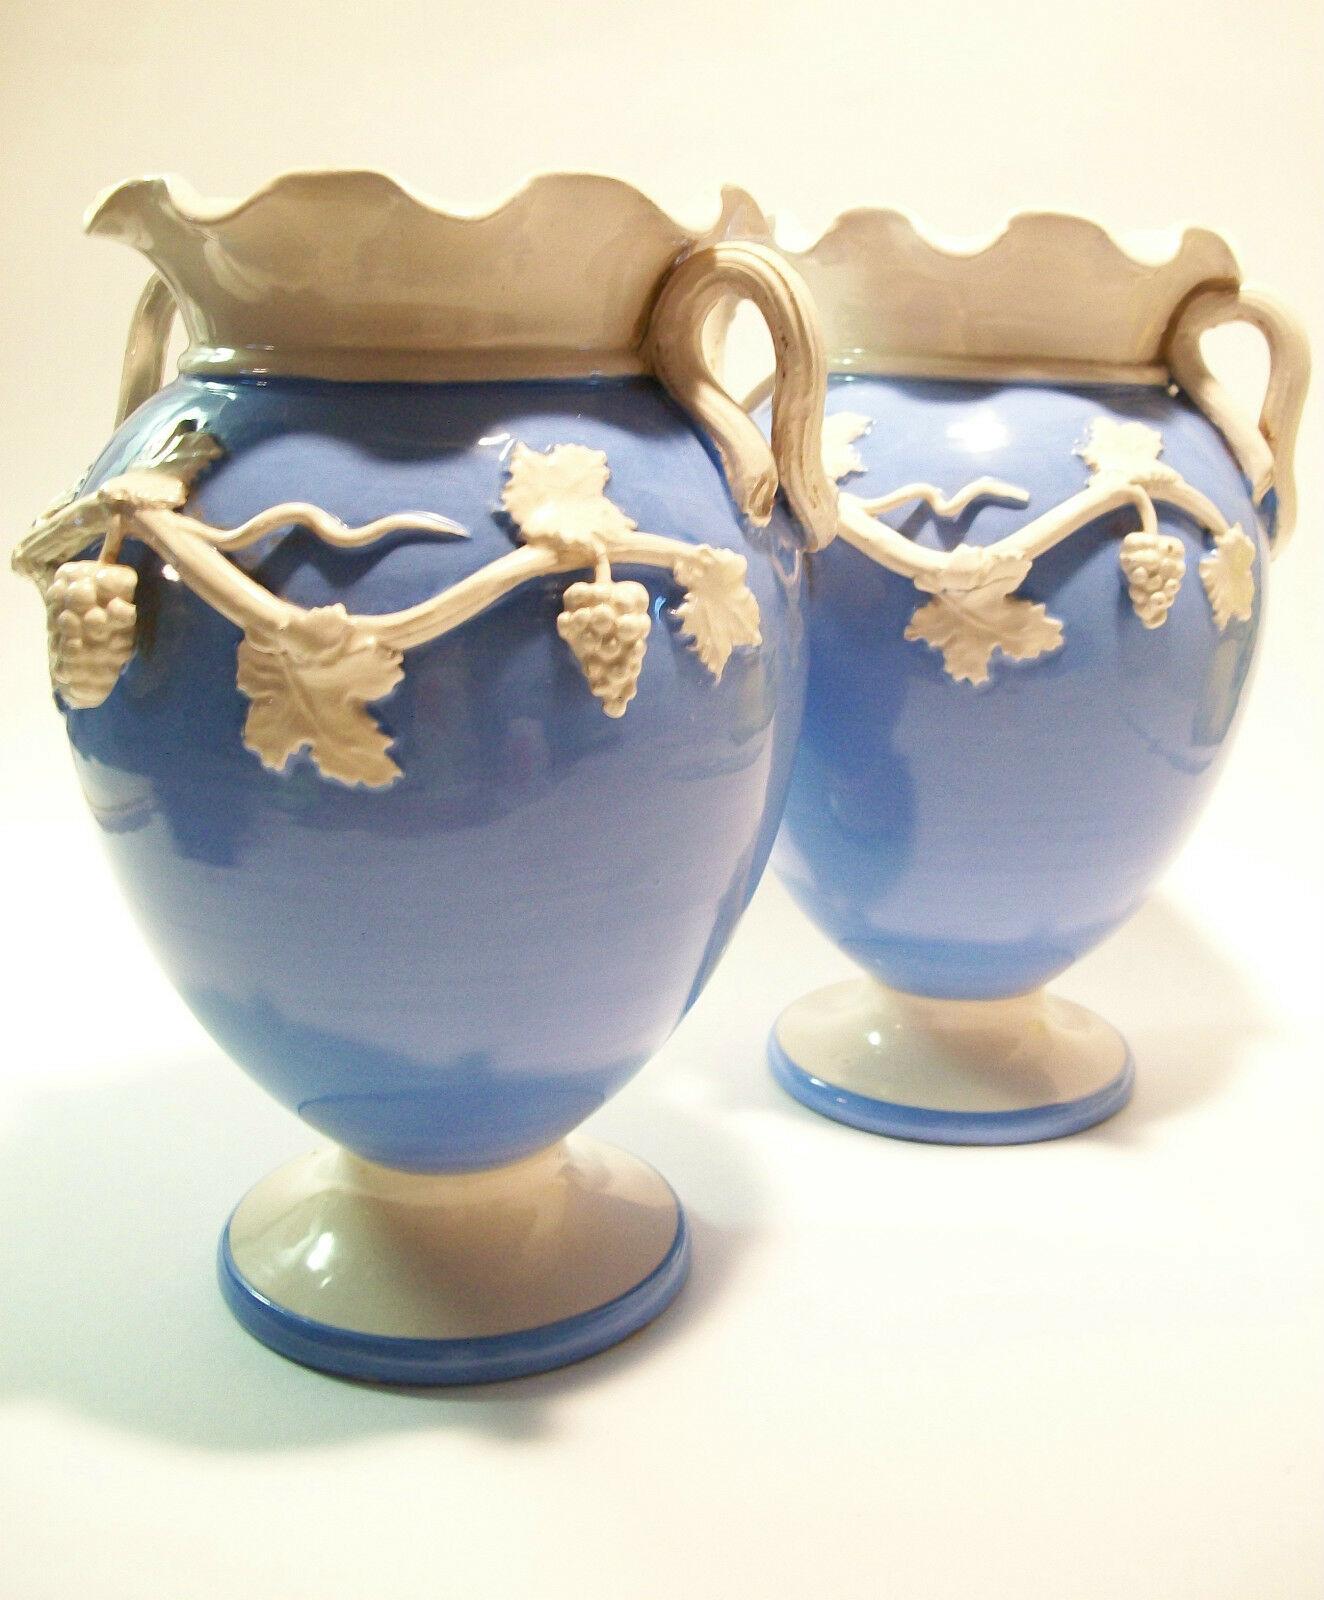 UGO ZACCAGNINI - Außergewöhnliches Paar italienischer Majolika-Vasen mit zwei Henkeln - mit der Drehscheibe gedreht, mit handmodelliertem und appliziertem 'Trauben'-Dekor - Blätter und Ranken bilden die Henkel - jede Vase ein Unikat - jede signiert